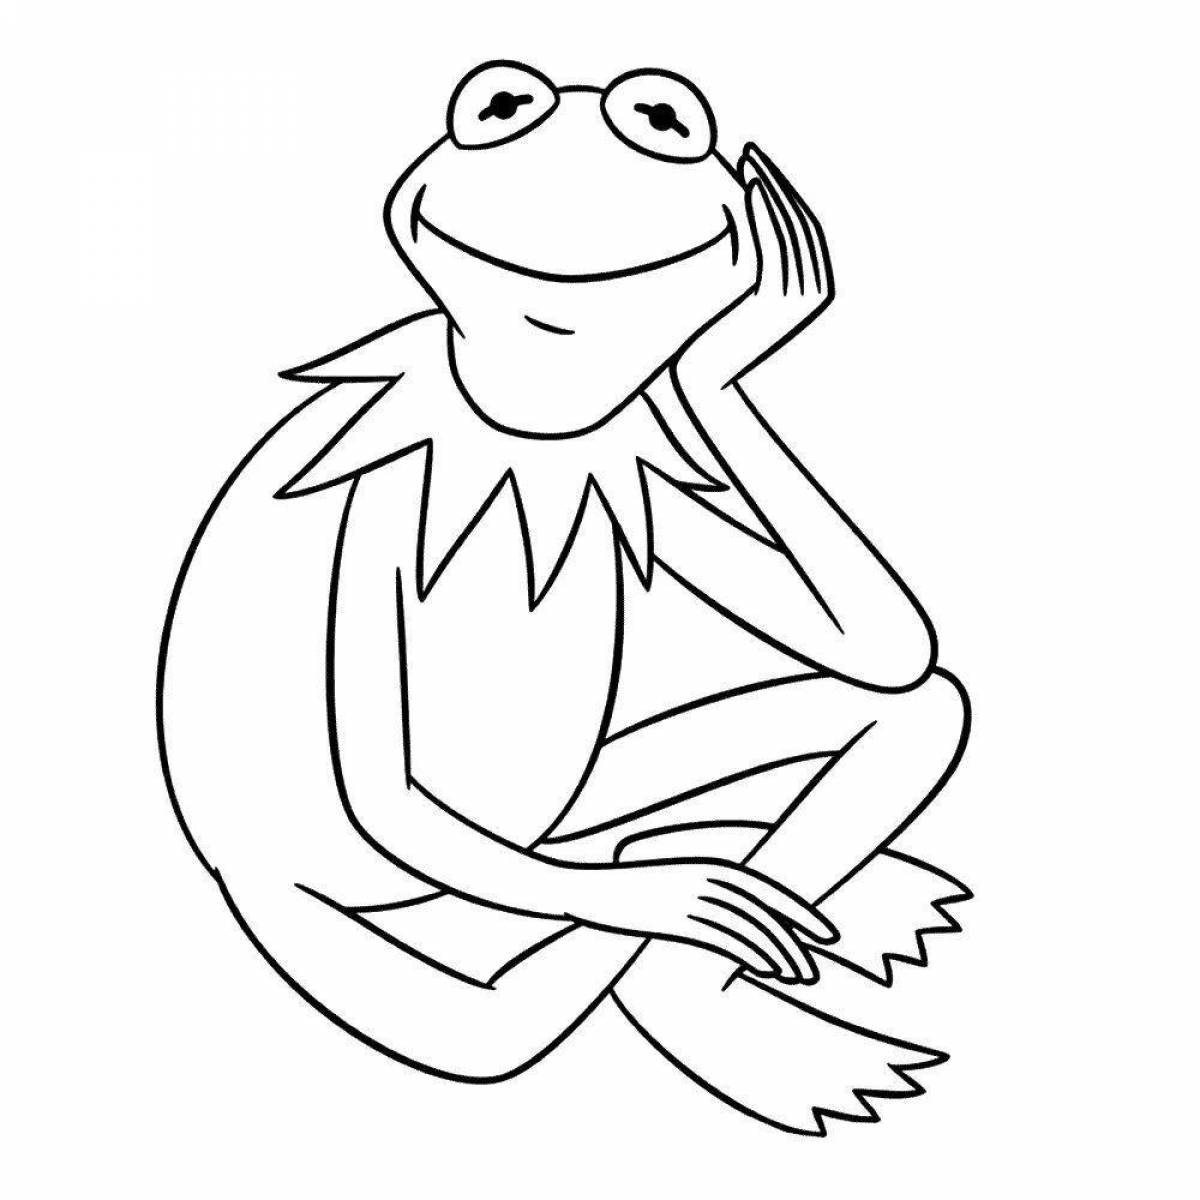 Charming frog tik tok coloring book